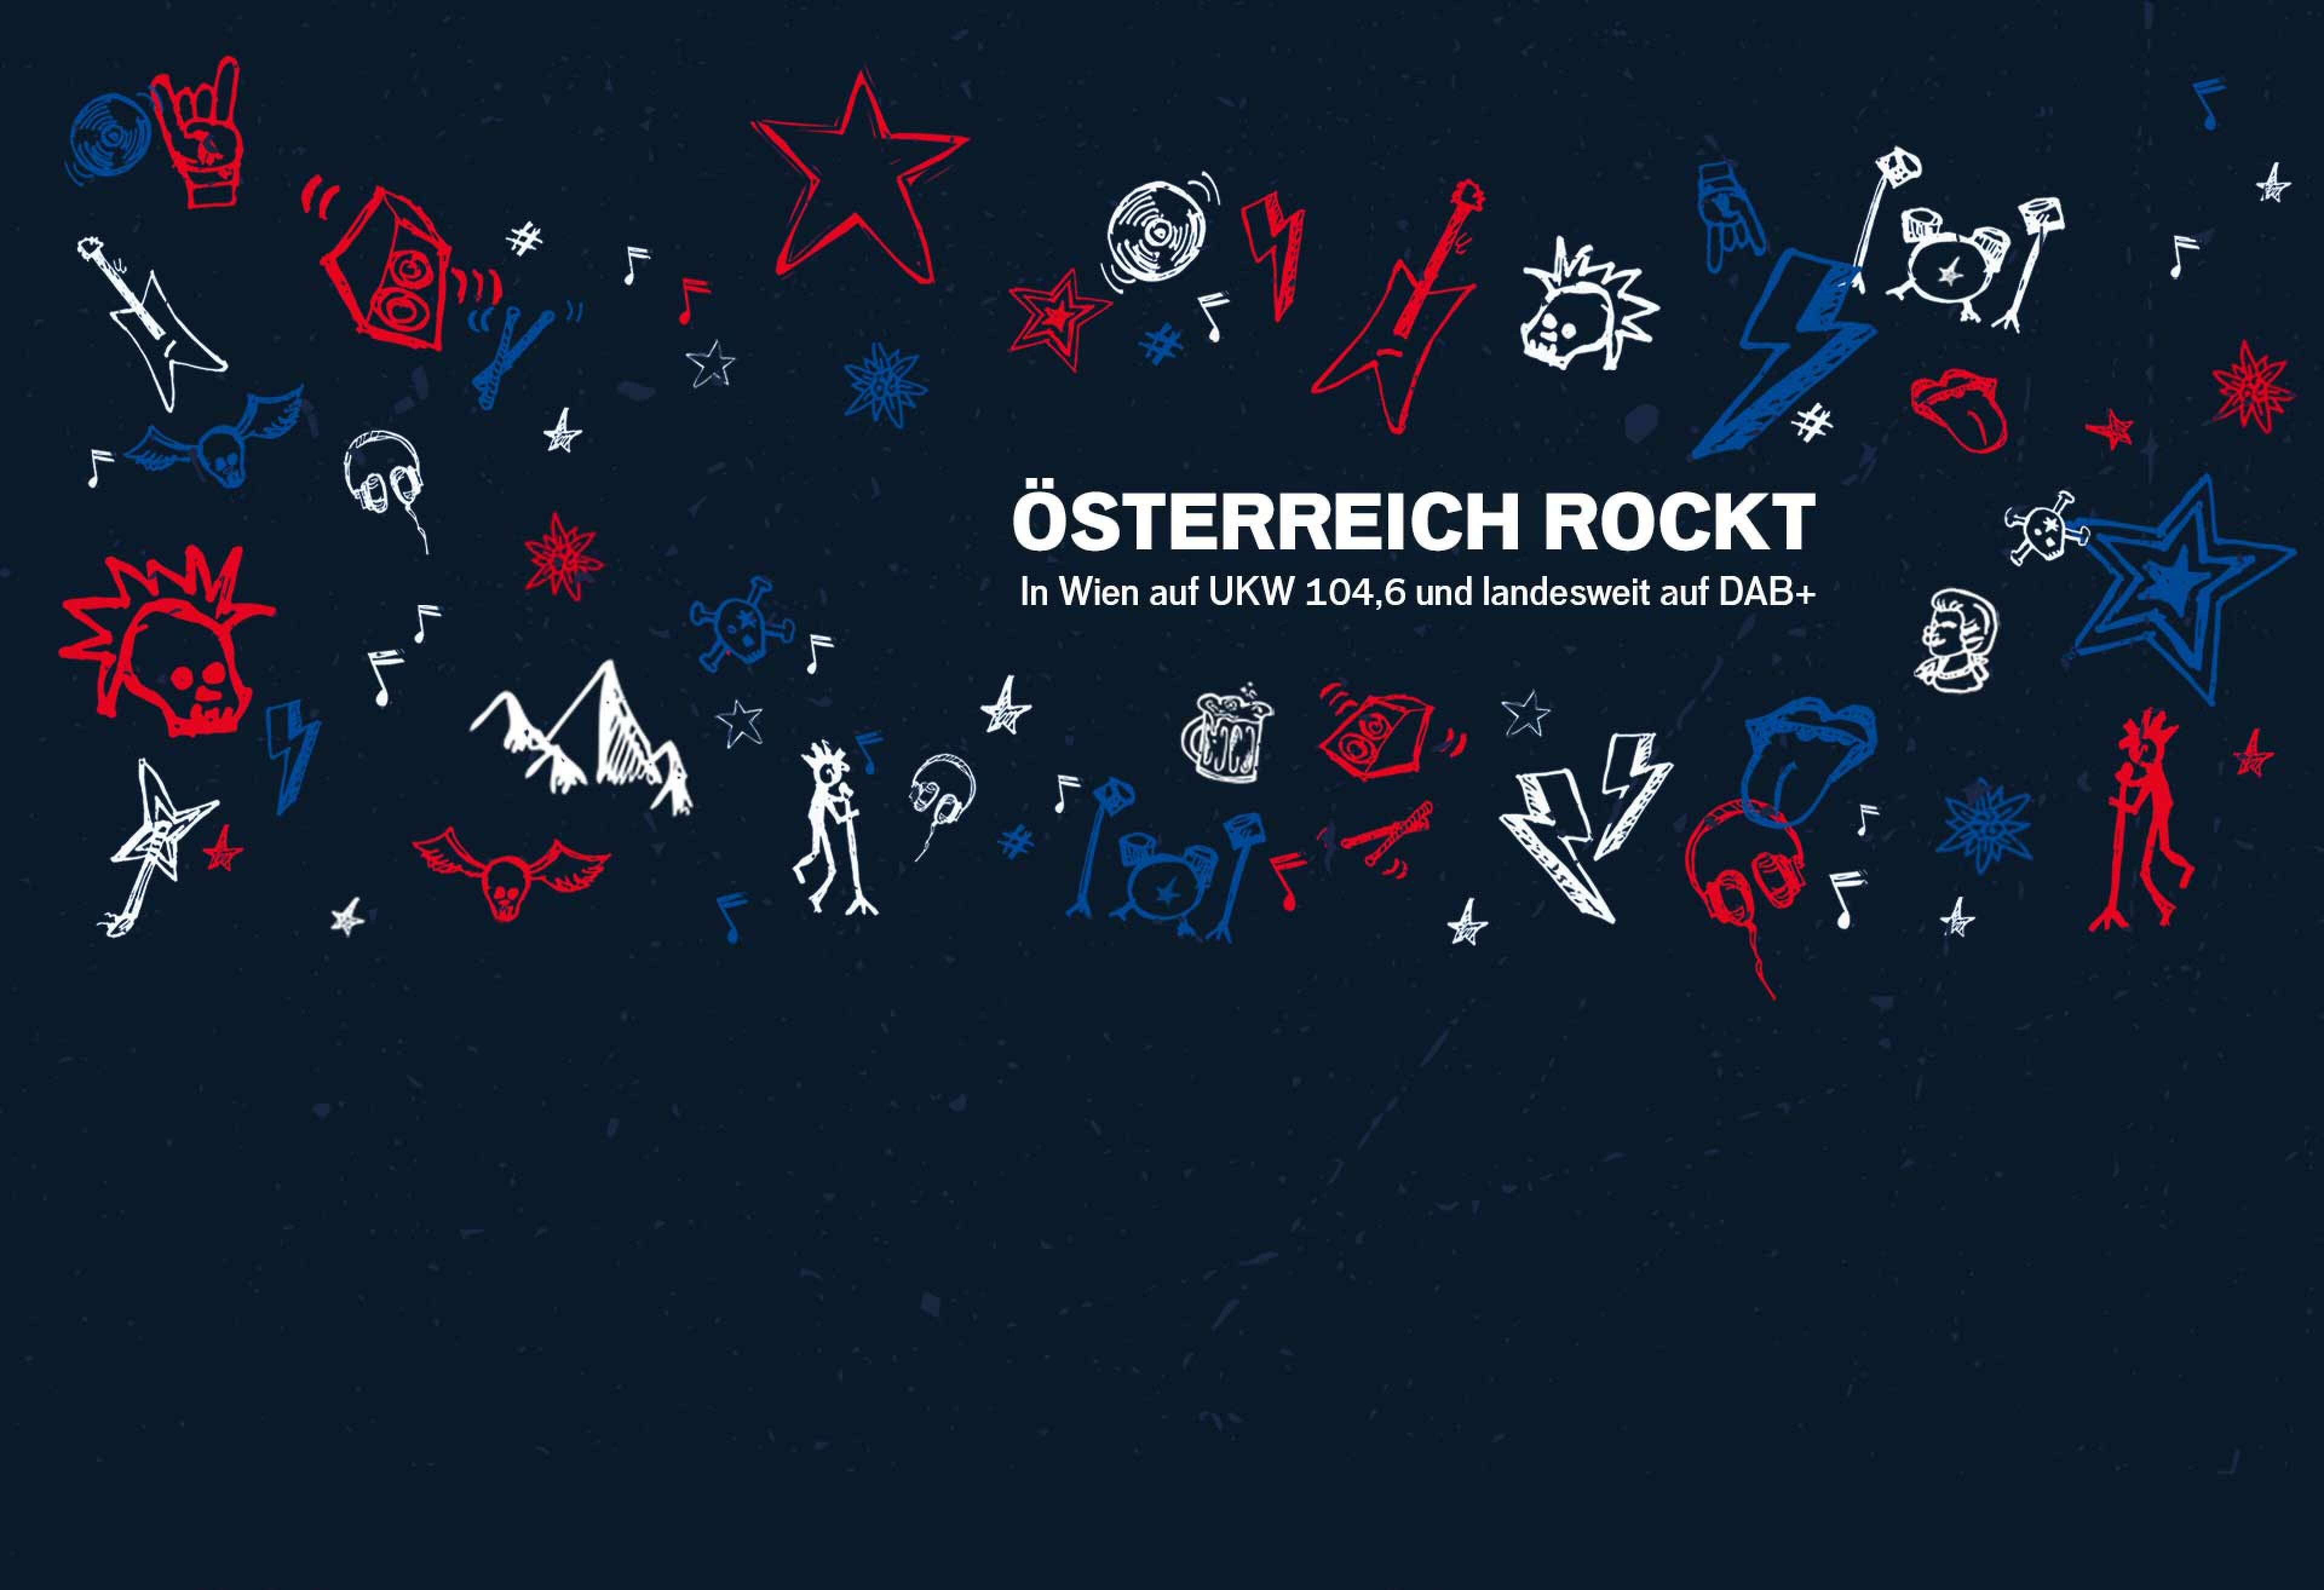 Verschiedene Rock-Scribbles (z.B. Sterne, Noten, Gitarren, Pommesgabel, Berge, Bier, Edelweiß) mit dem Text "Österreich rockt! In Wien auf UKW 104,6 und landesweit auf DAB+"